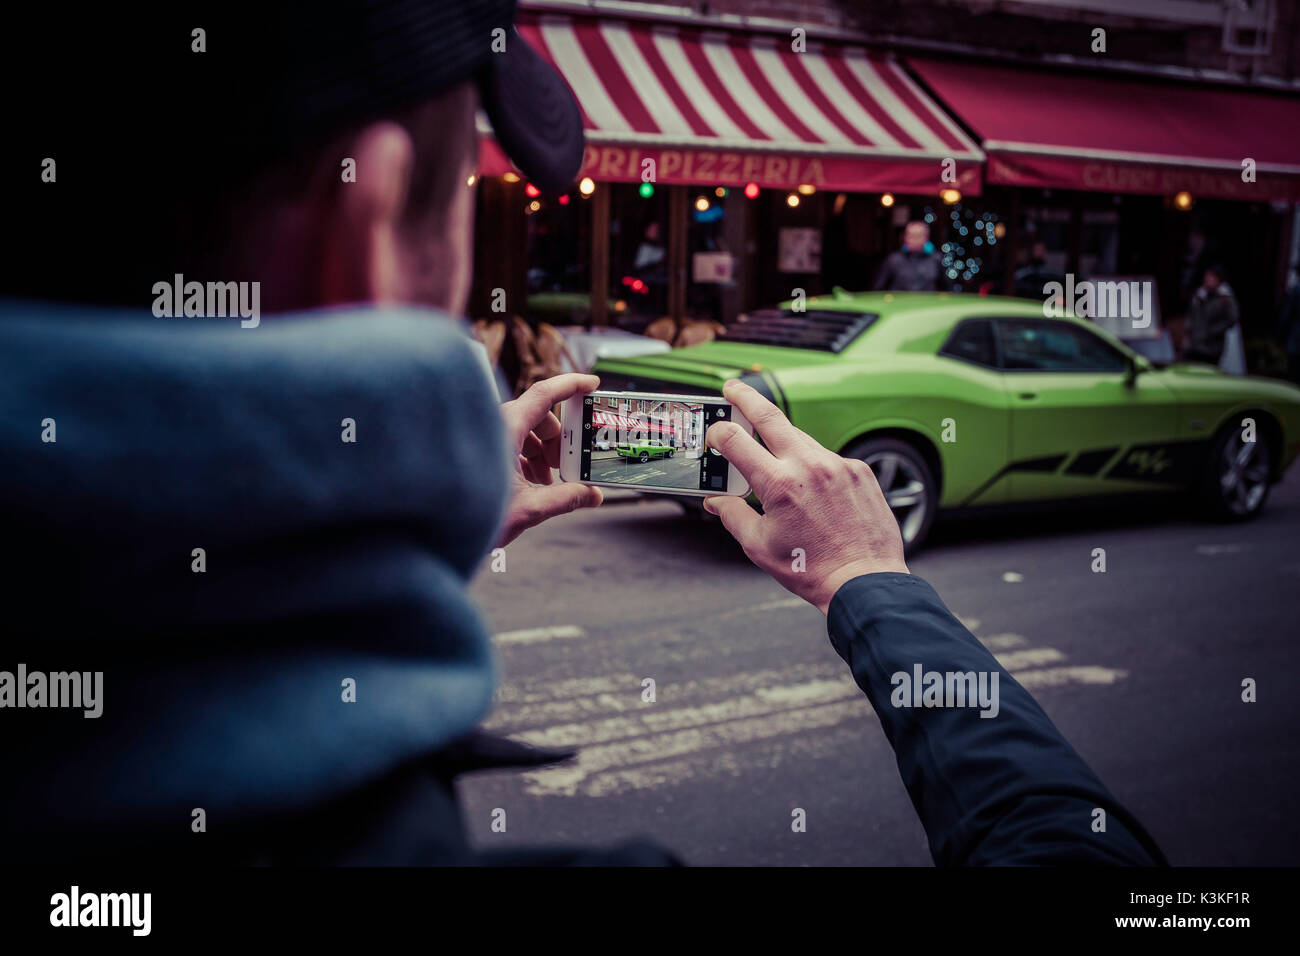 La prise de photo d'une Chevrolet Camaro verte, en face d'une pizzeria, Little Italy, Manhattan, New York, USA Banque D'Images